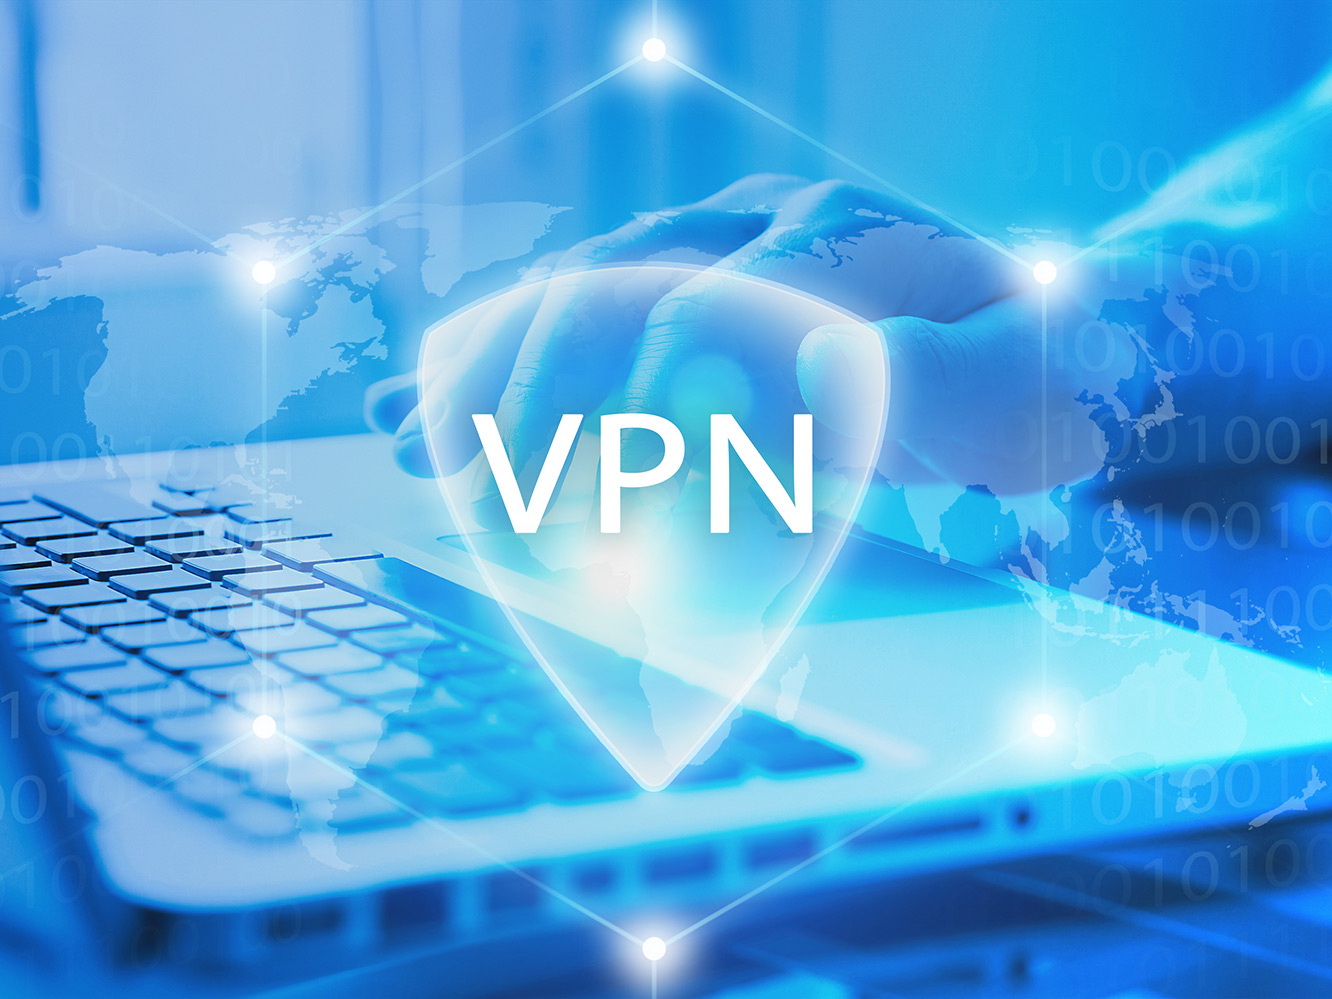 Азербайджан вошел в список самых активных пользователей VPN в мире в 2020 году